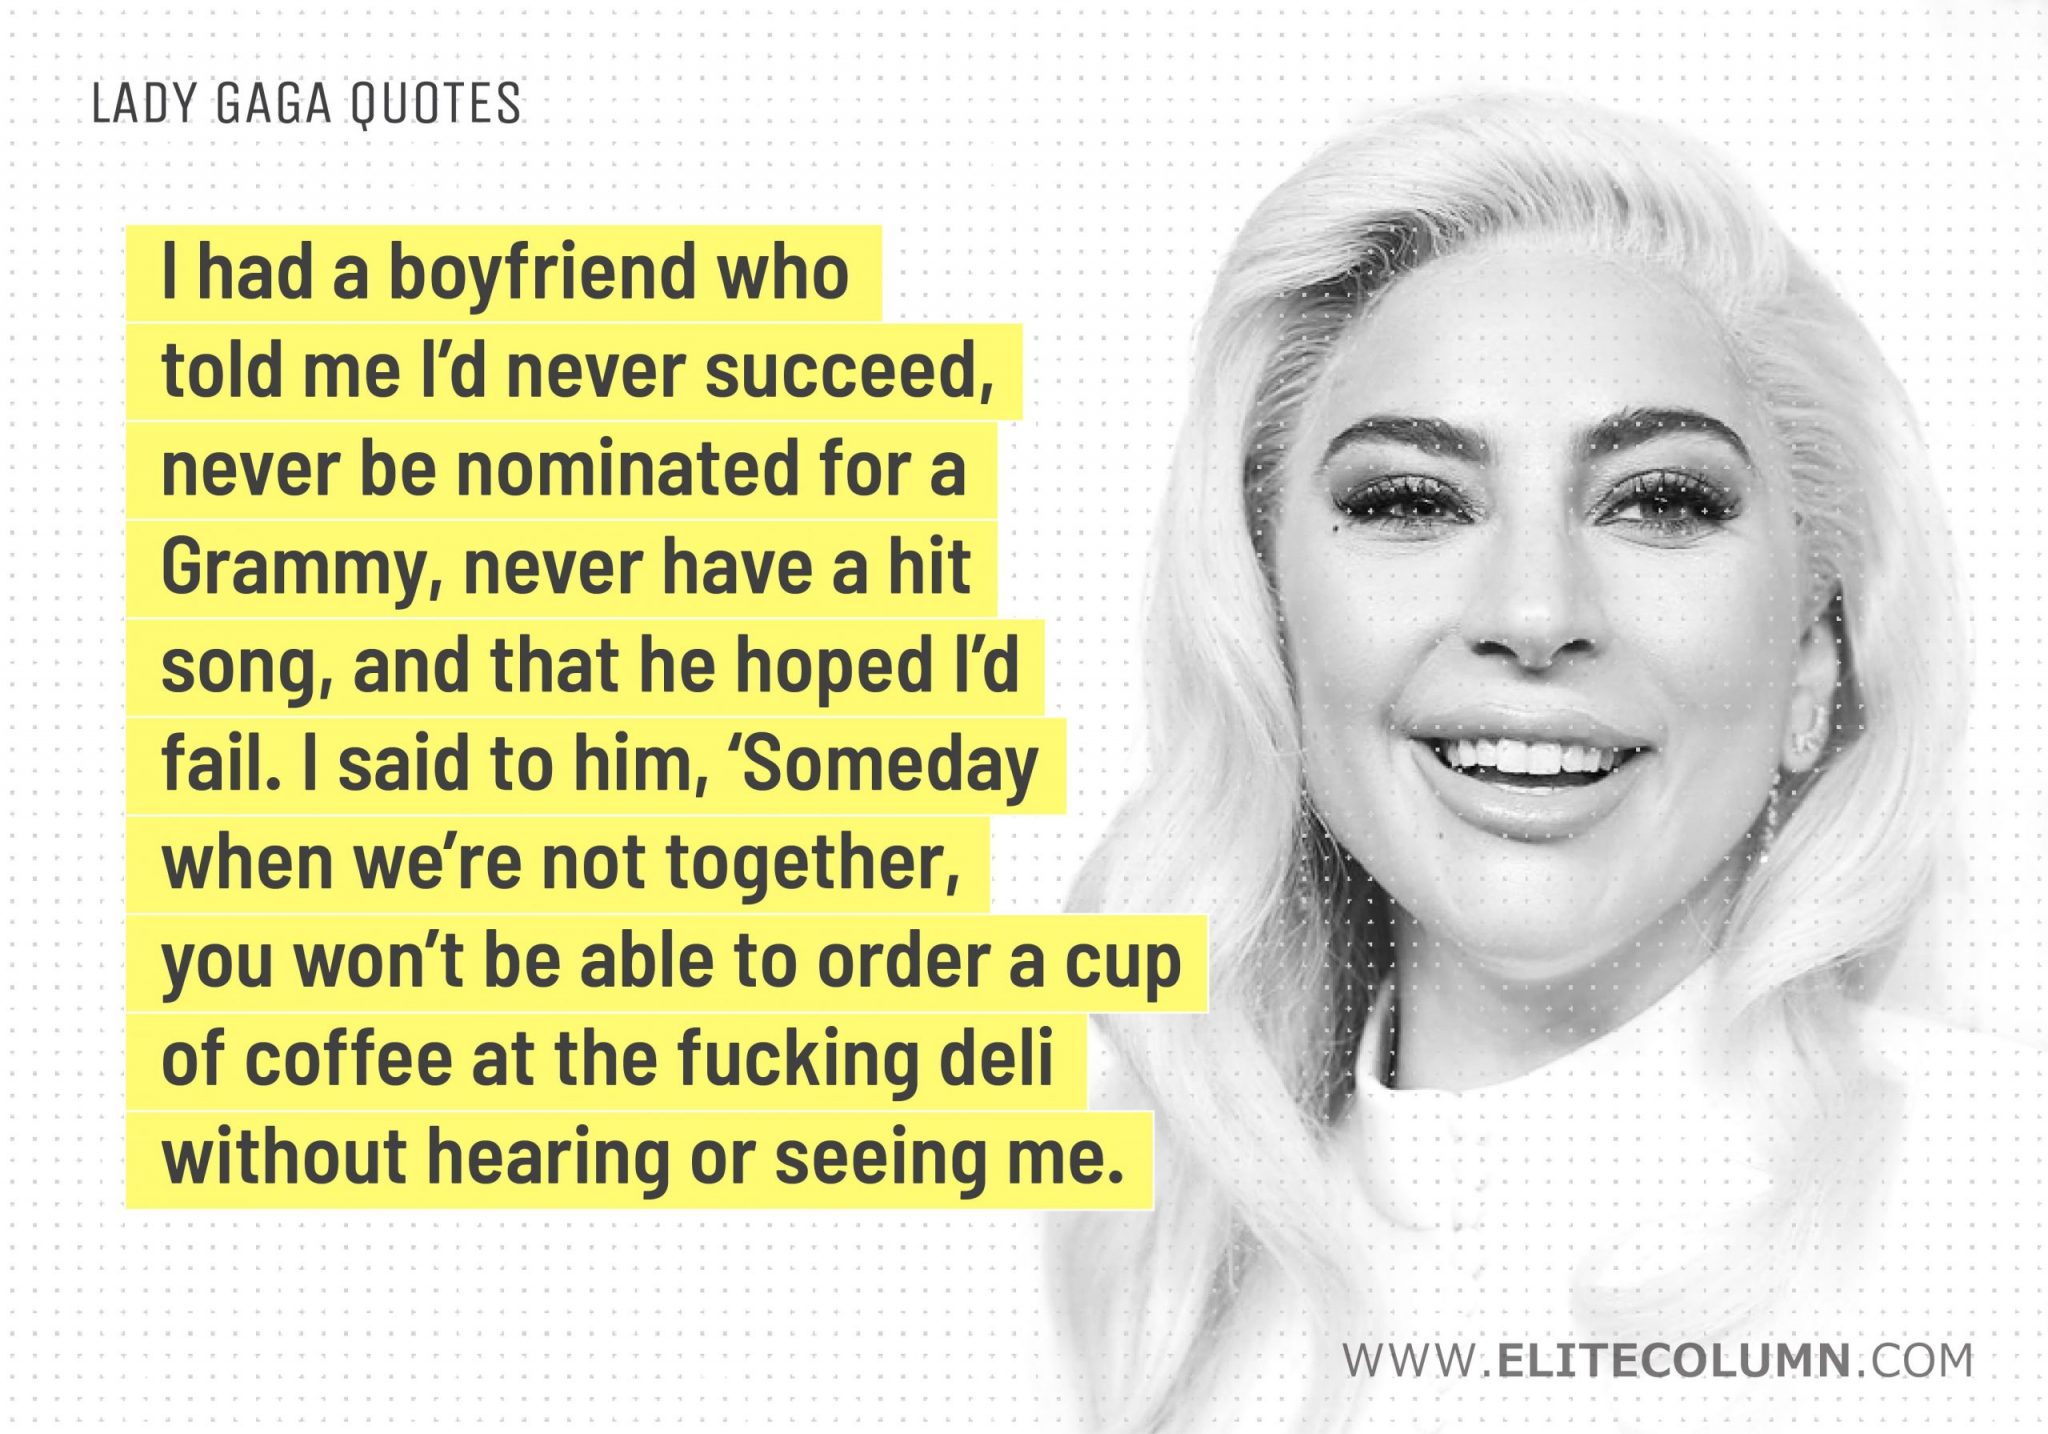 Lady Gaga Quotes (3)